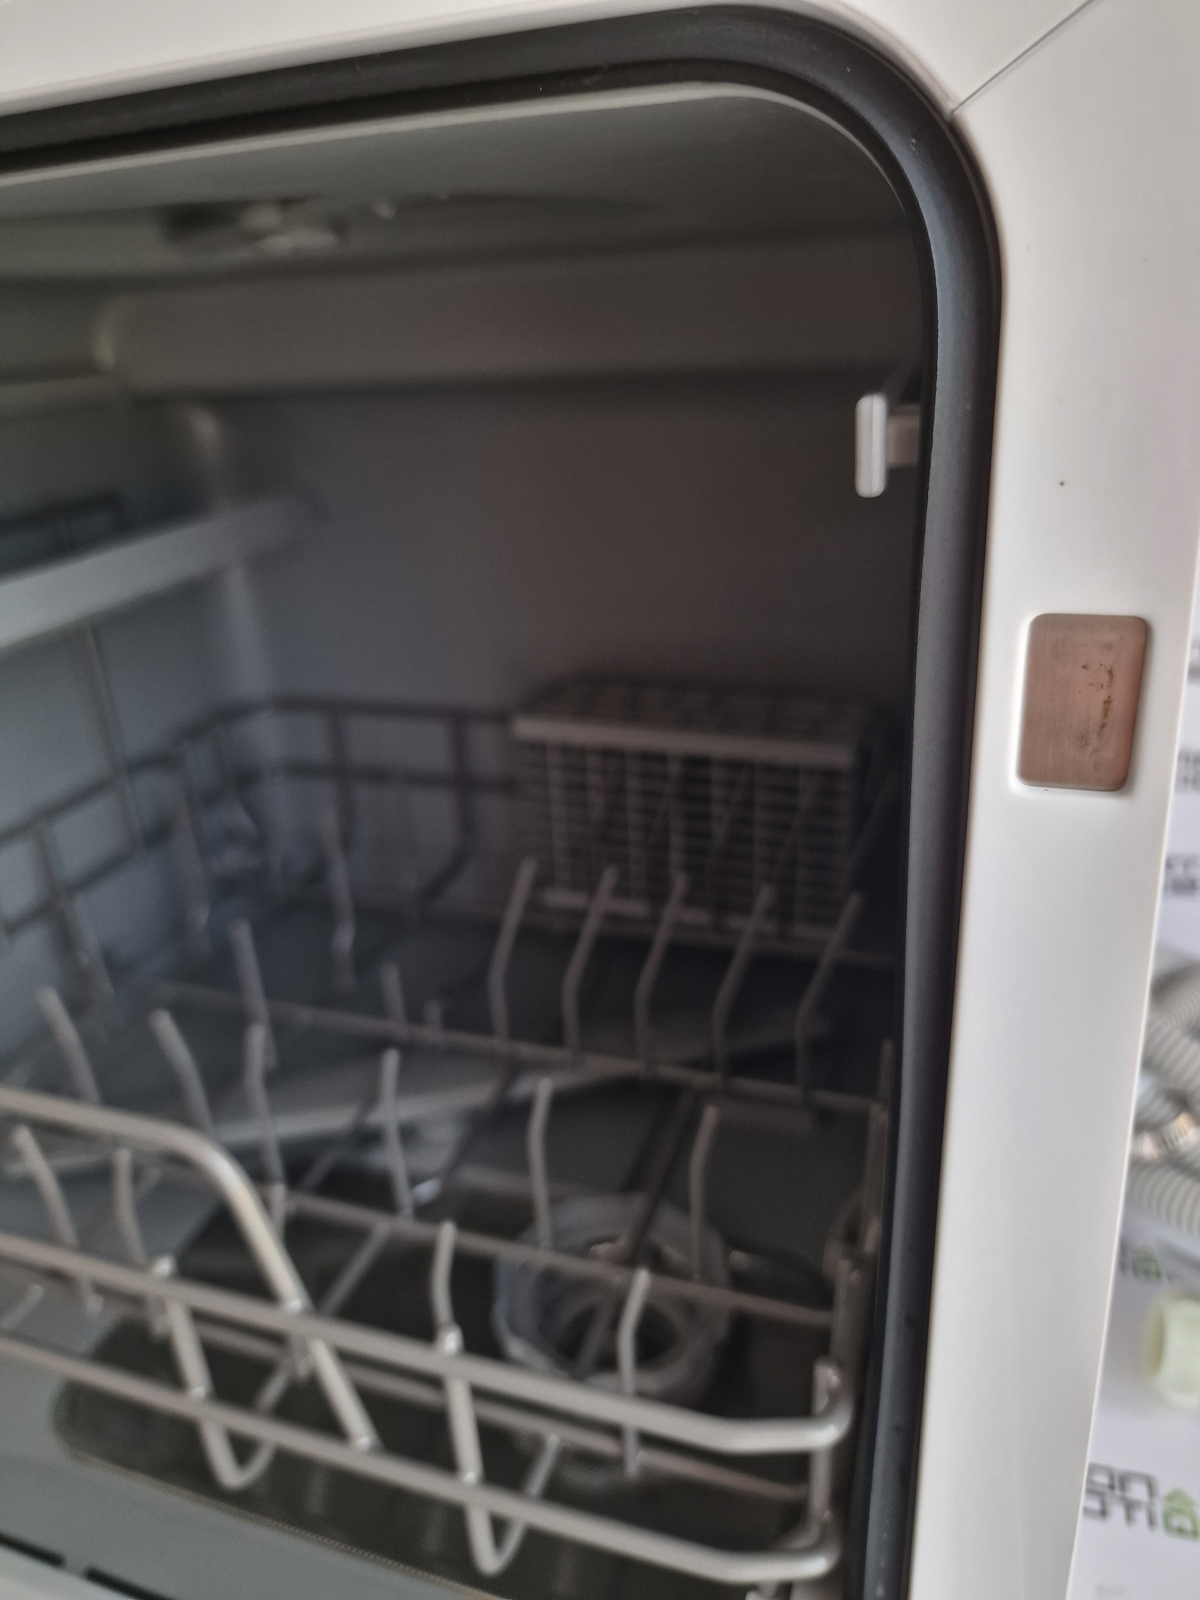 Lave-vaisselle compact de comptoir HAVA R01 remis à neuf